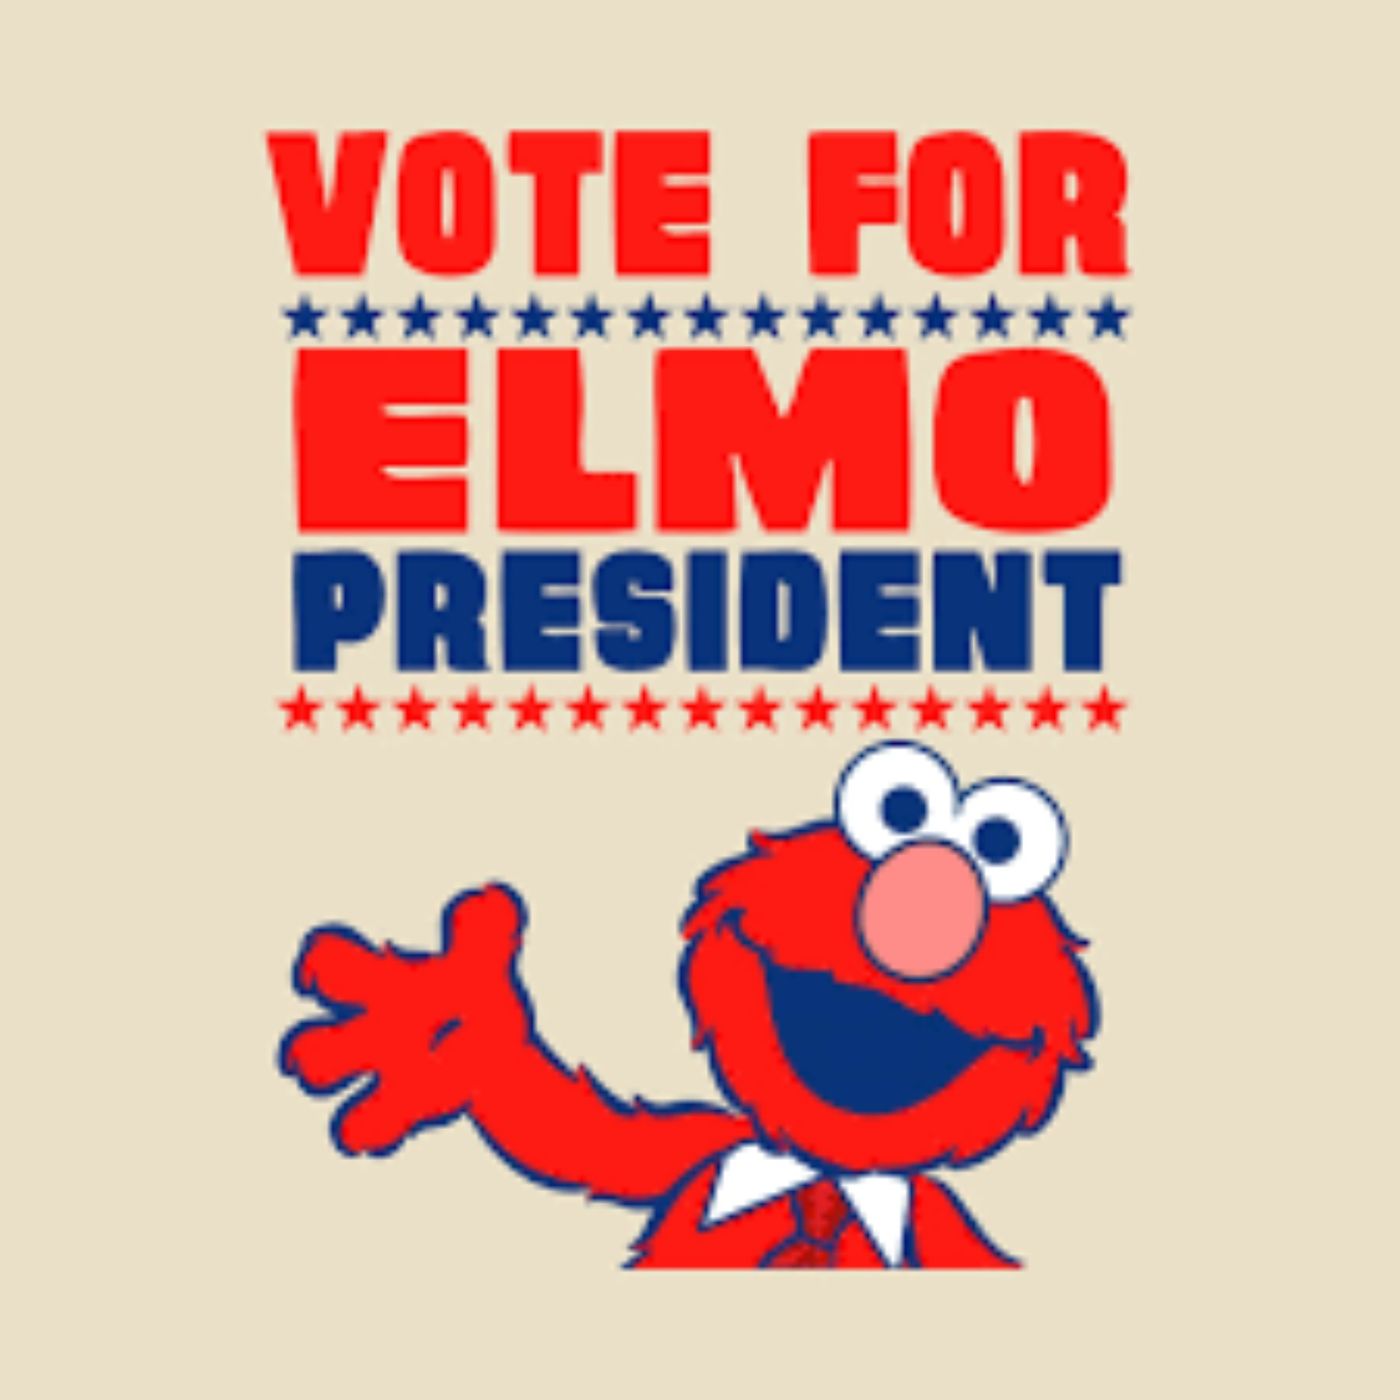 Elmo for President!